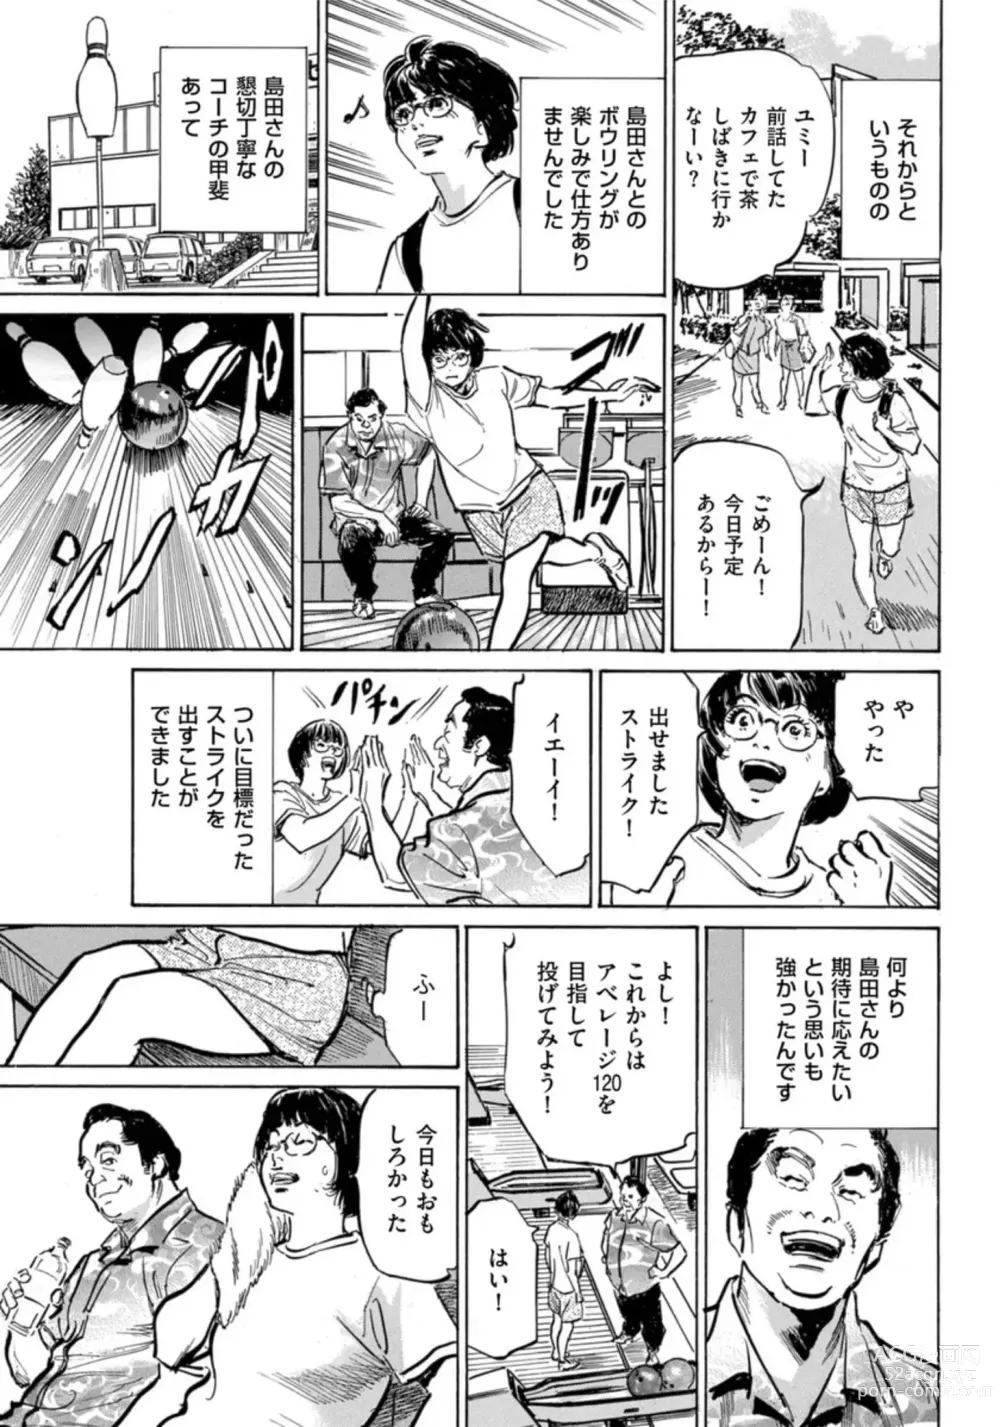 Page 24 of manga Zutto Himitsu ni Shiteita Ano Koto Zenbu Oshiemasu 14 episodes